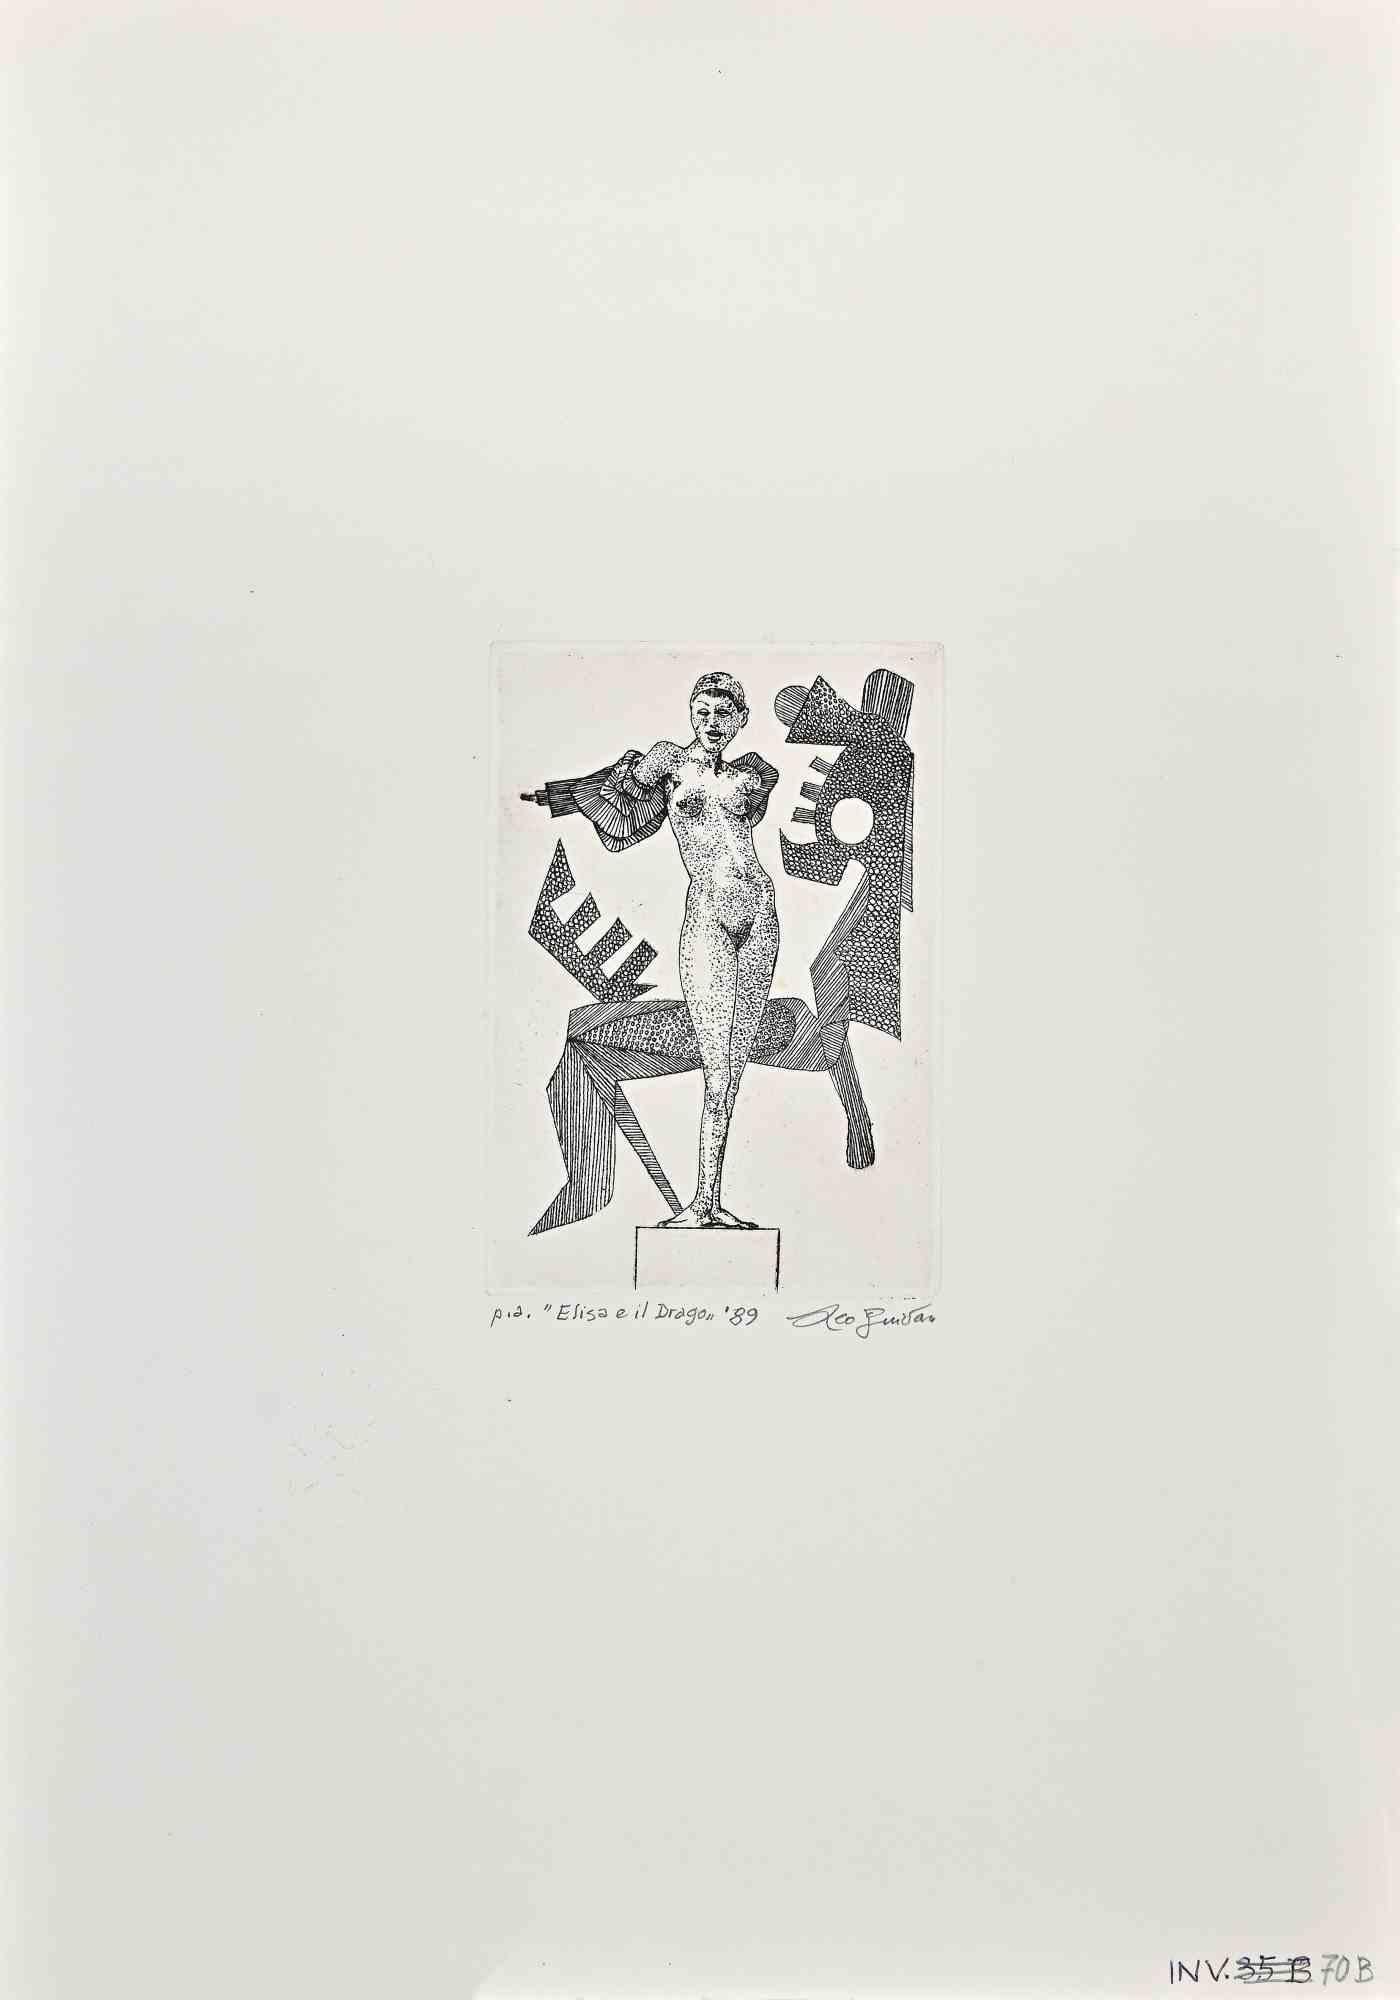 Elisa et le dragon est une gravure réalisée par Leo Guida dans les années 1971.

Bon état, épreuve d'artiste.

Signé, titré et daté par l'artiste au crayon dans la marge inférieure.

Artistics sensible aux questions d'actualité, aux mouvements